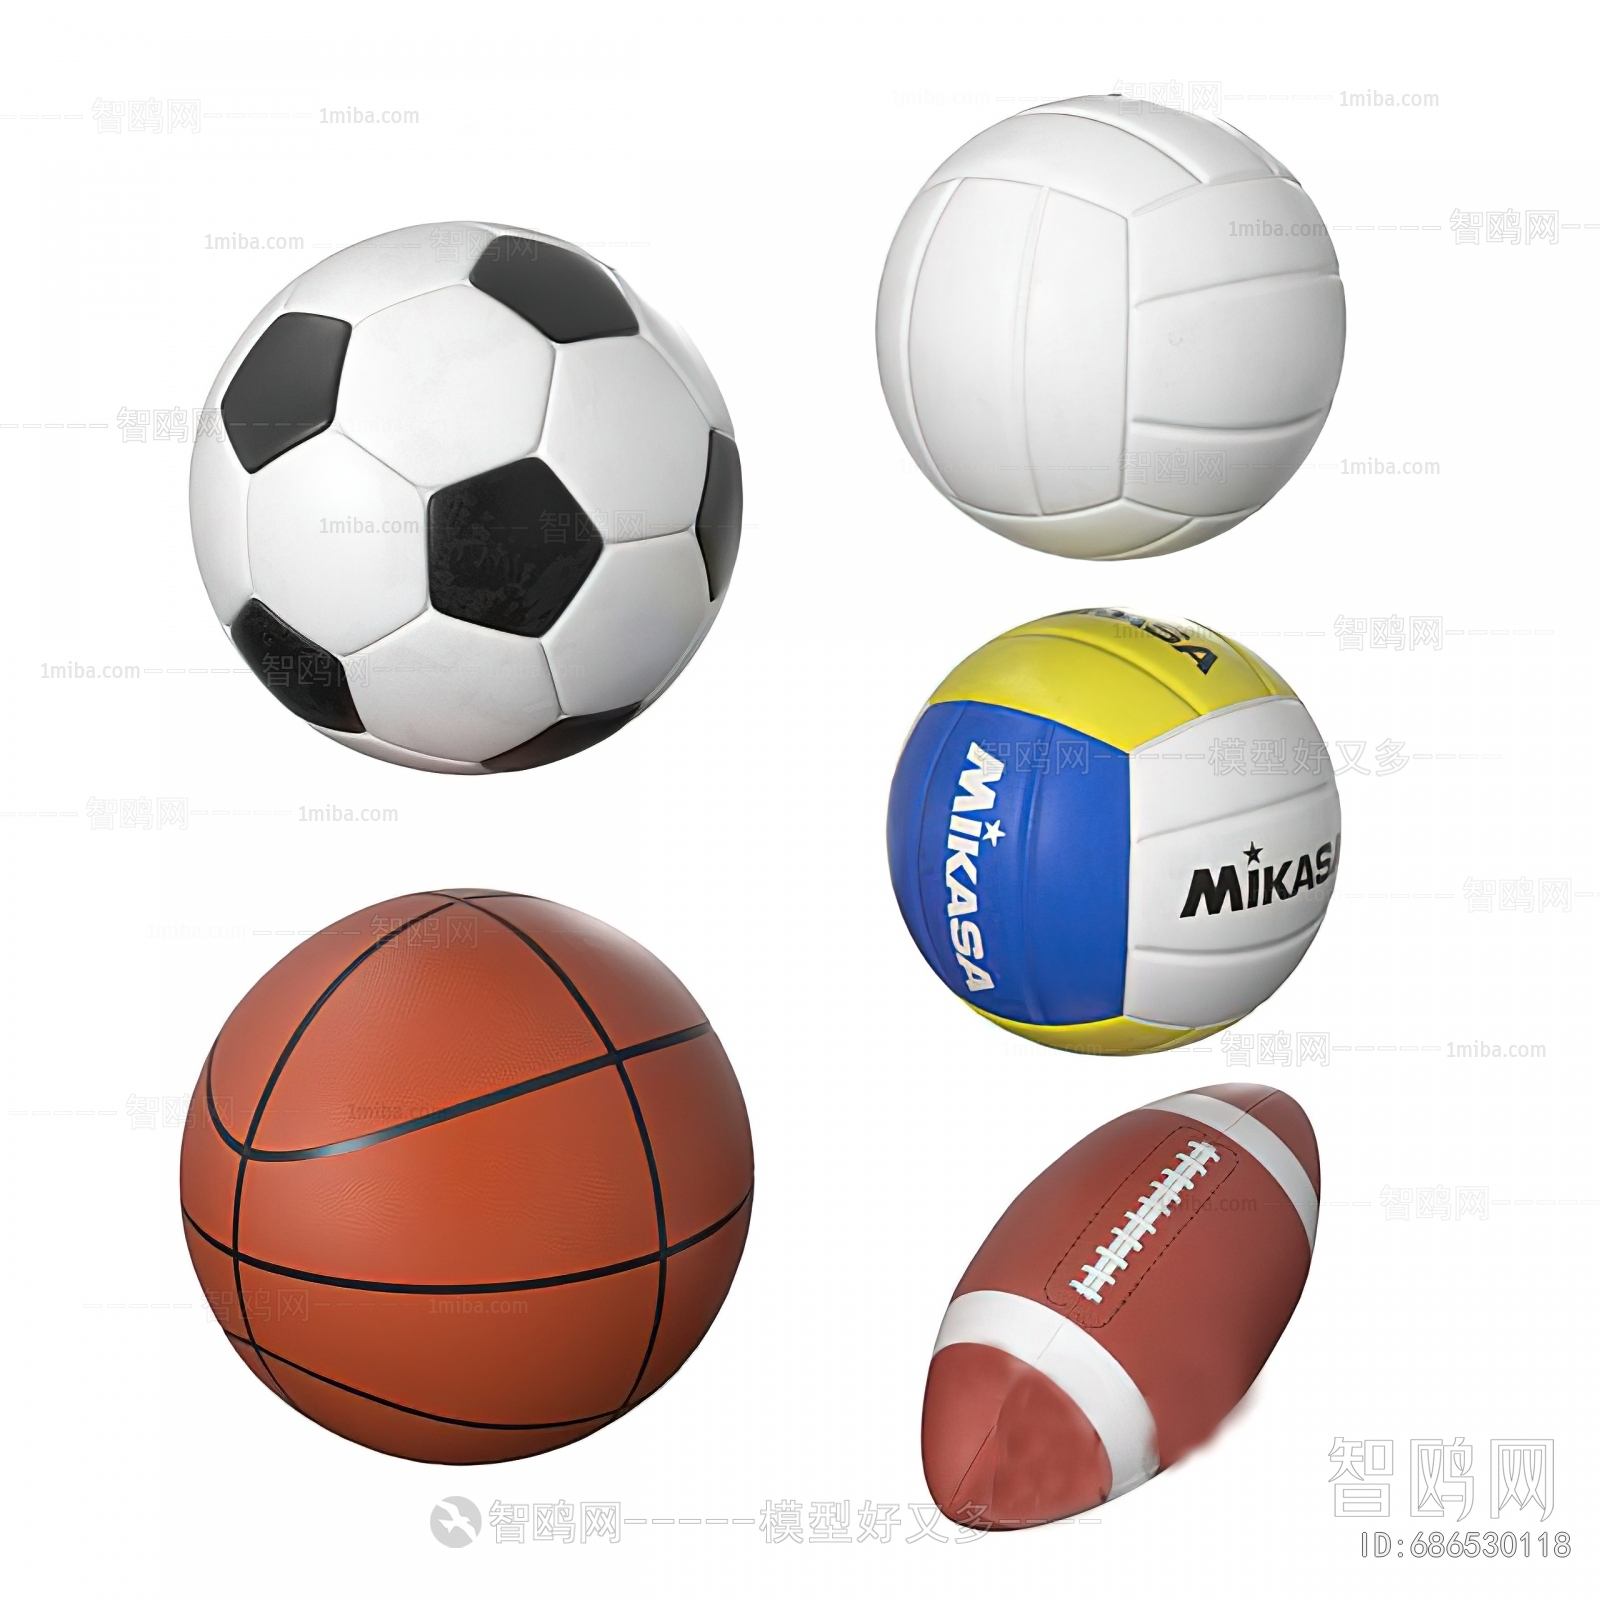 Modern Ball Equipment